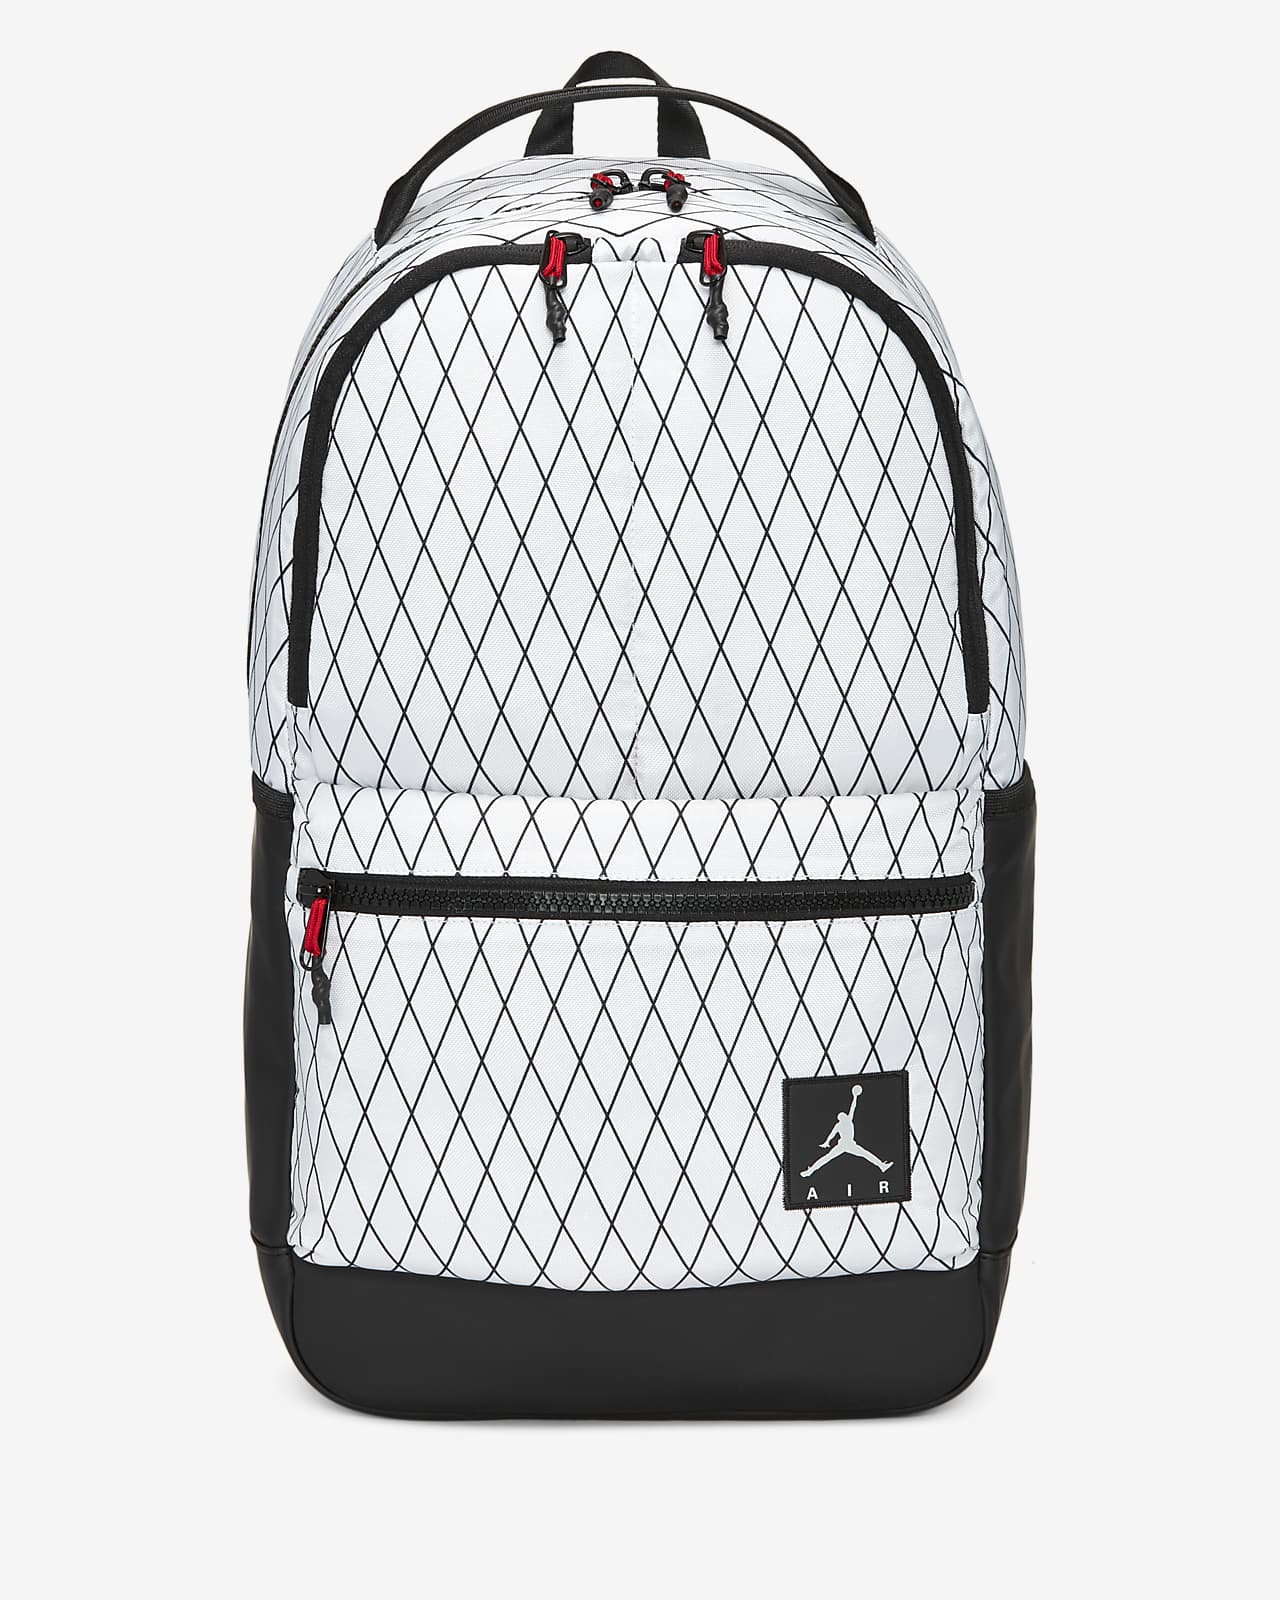 jordan mesh backpack